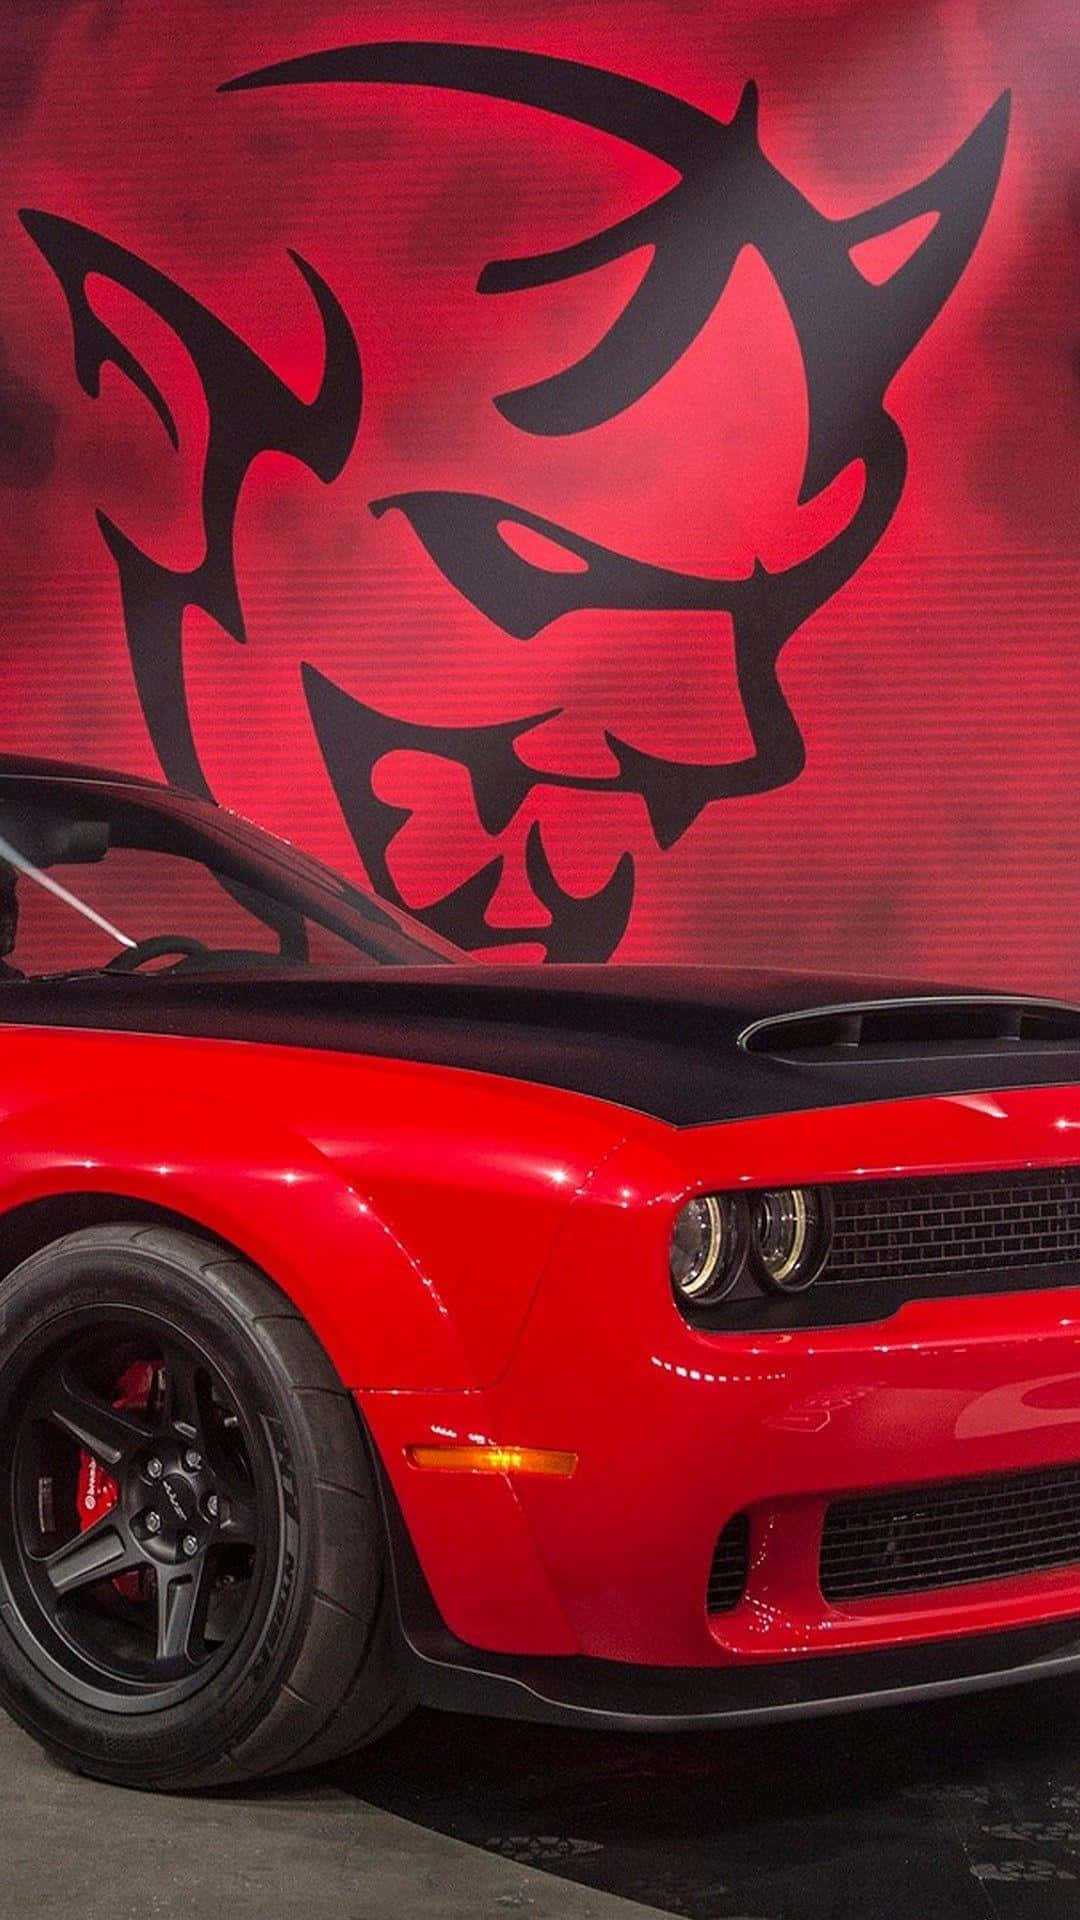 Umdodge Challenger Vermelho Está Estacionado Na Frente De Um Mural Com O Diabo. Papel de Parede